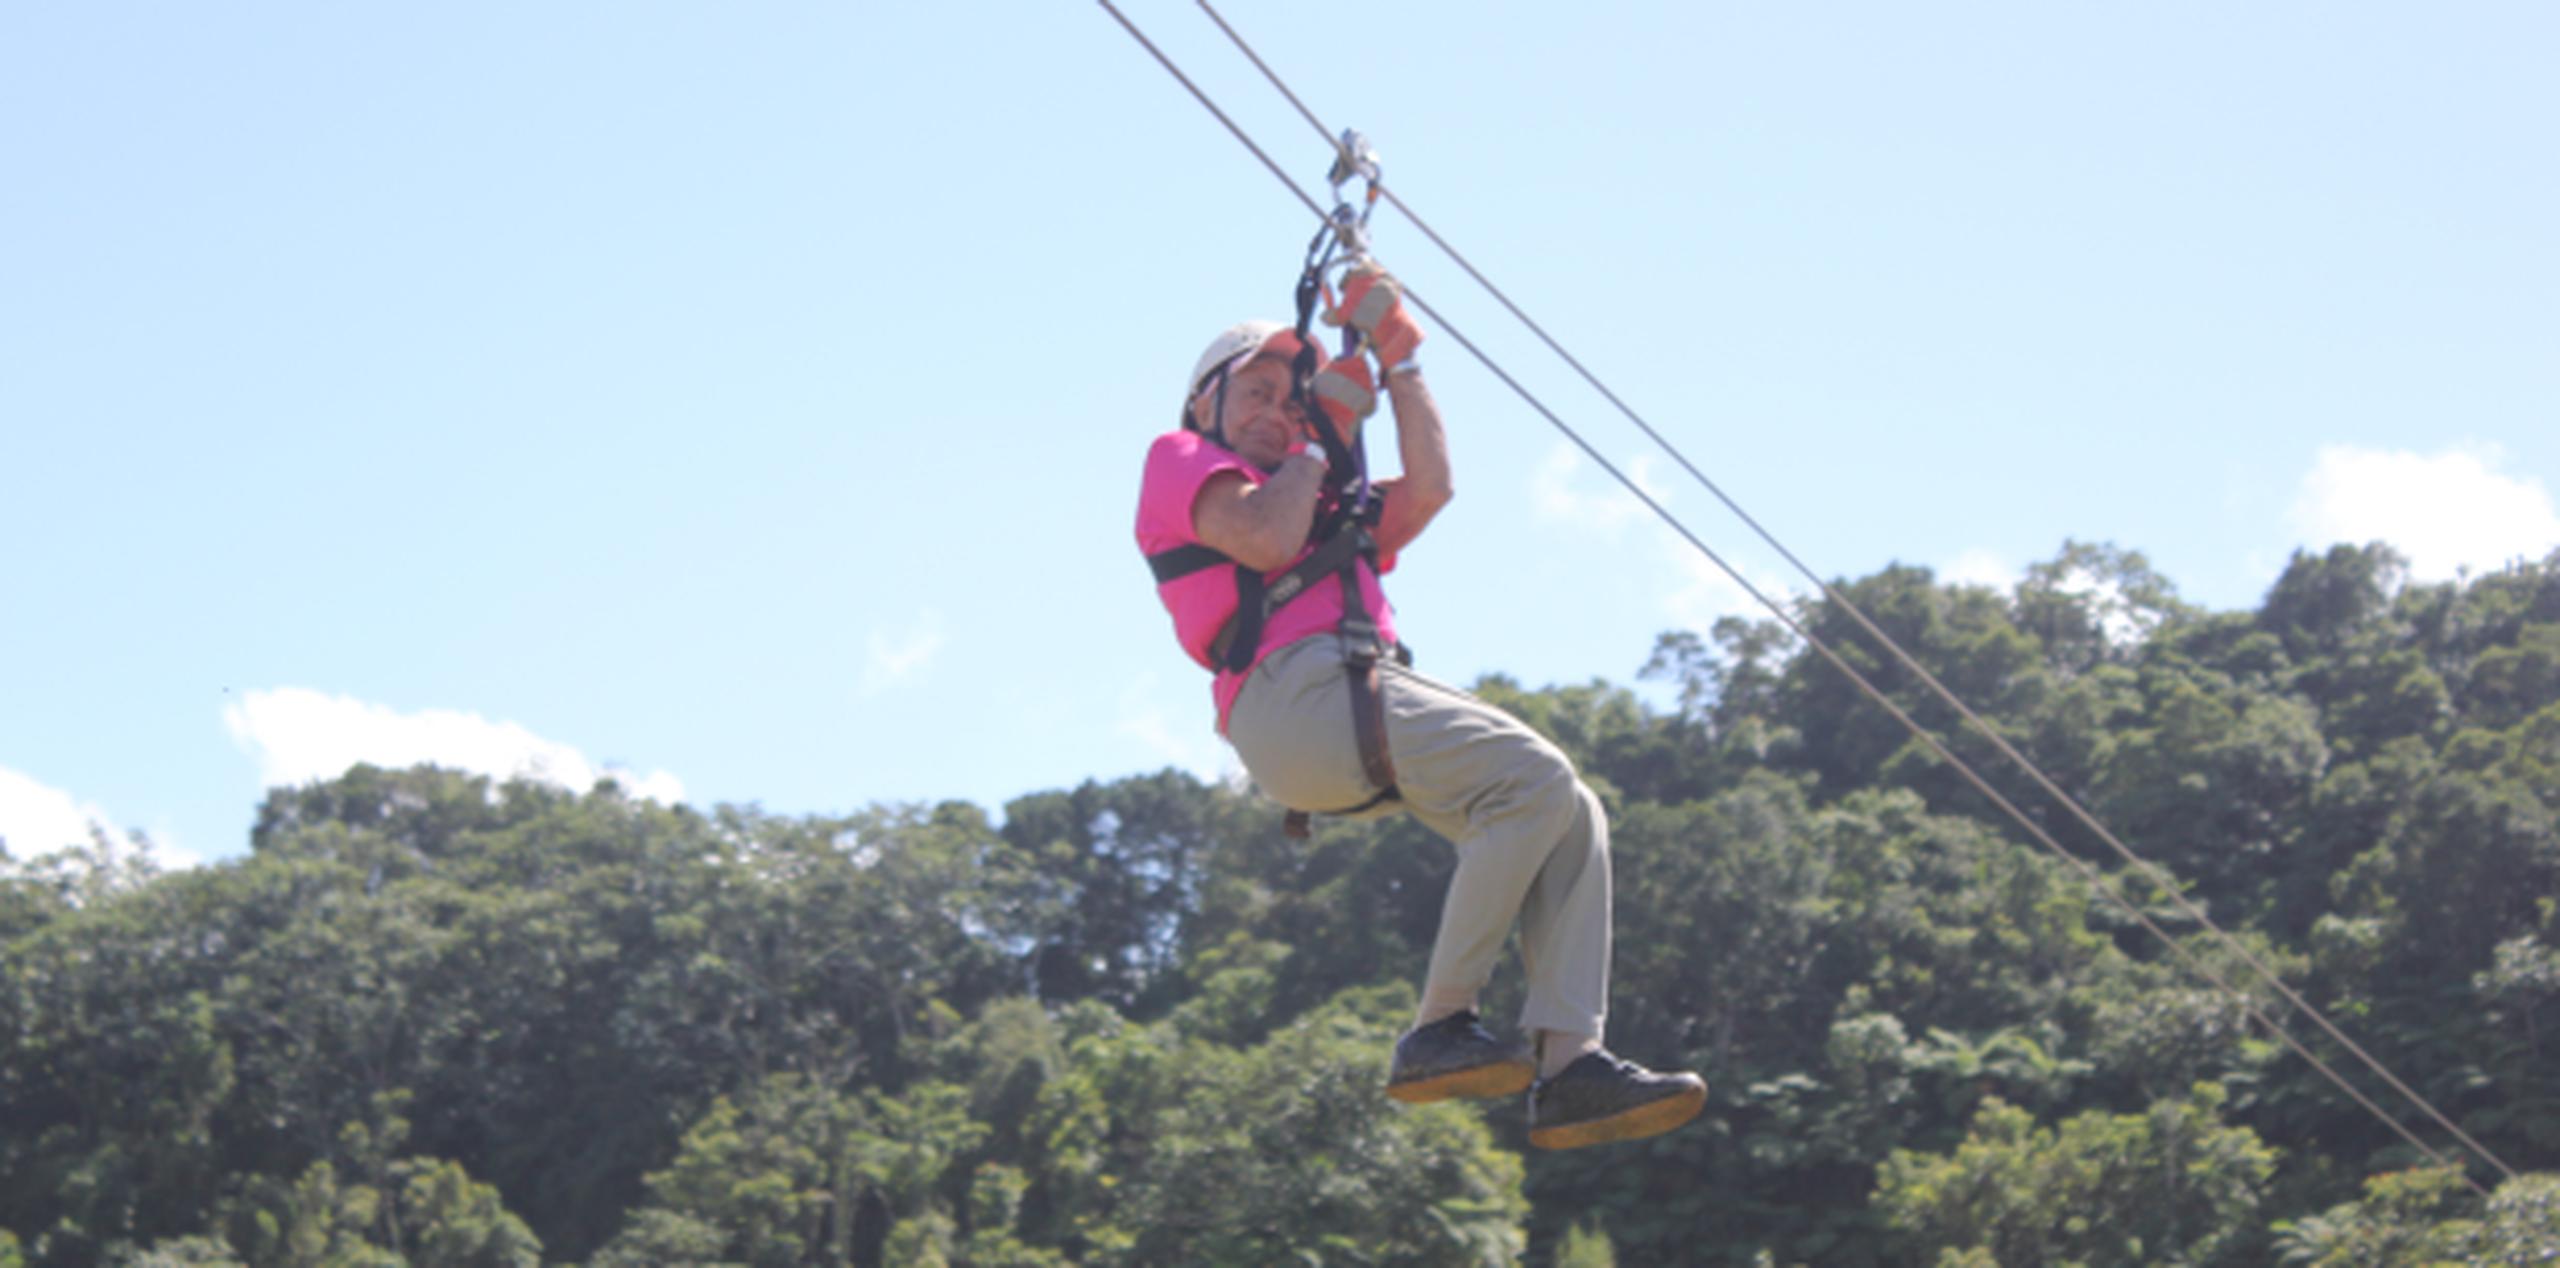 En la lista de las actividades extremas escogidas por Biga, claro que está viajar por el aire en hang gliding... ¡y con la tranquilidad que se la vive! (Suministrada)